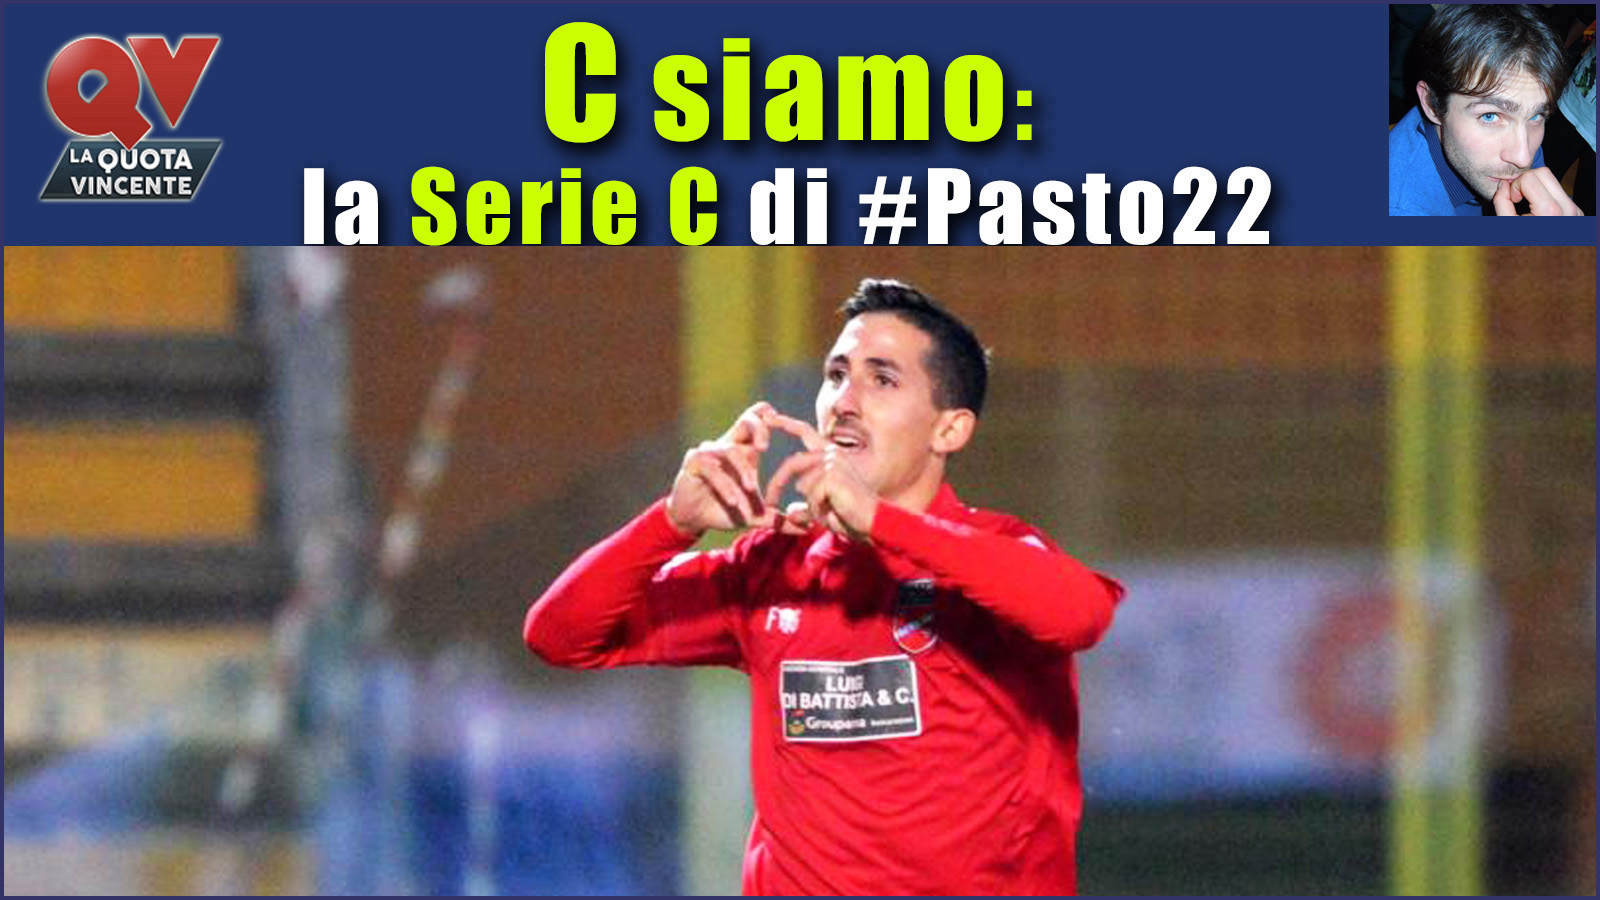 Pronostici Serie C sabato 9 dicembre: #Csiamo, il blog di #Pasto22